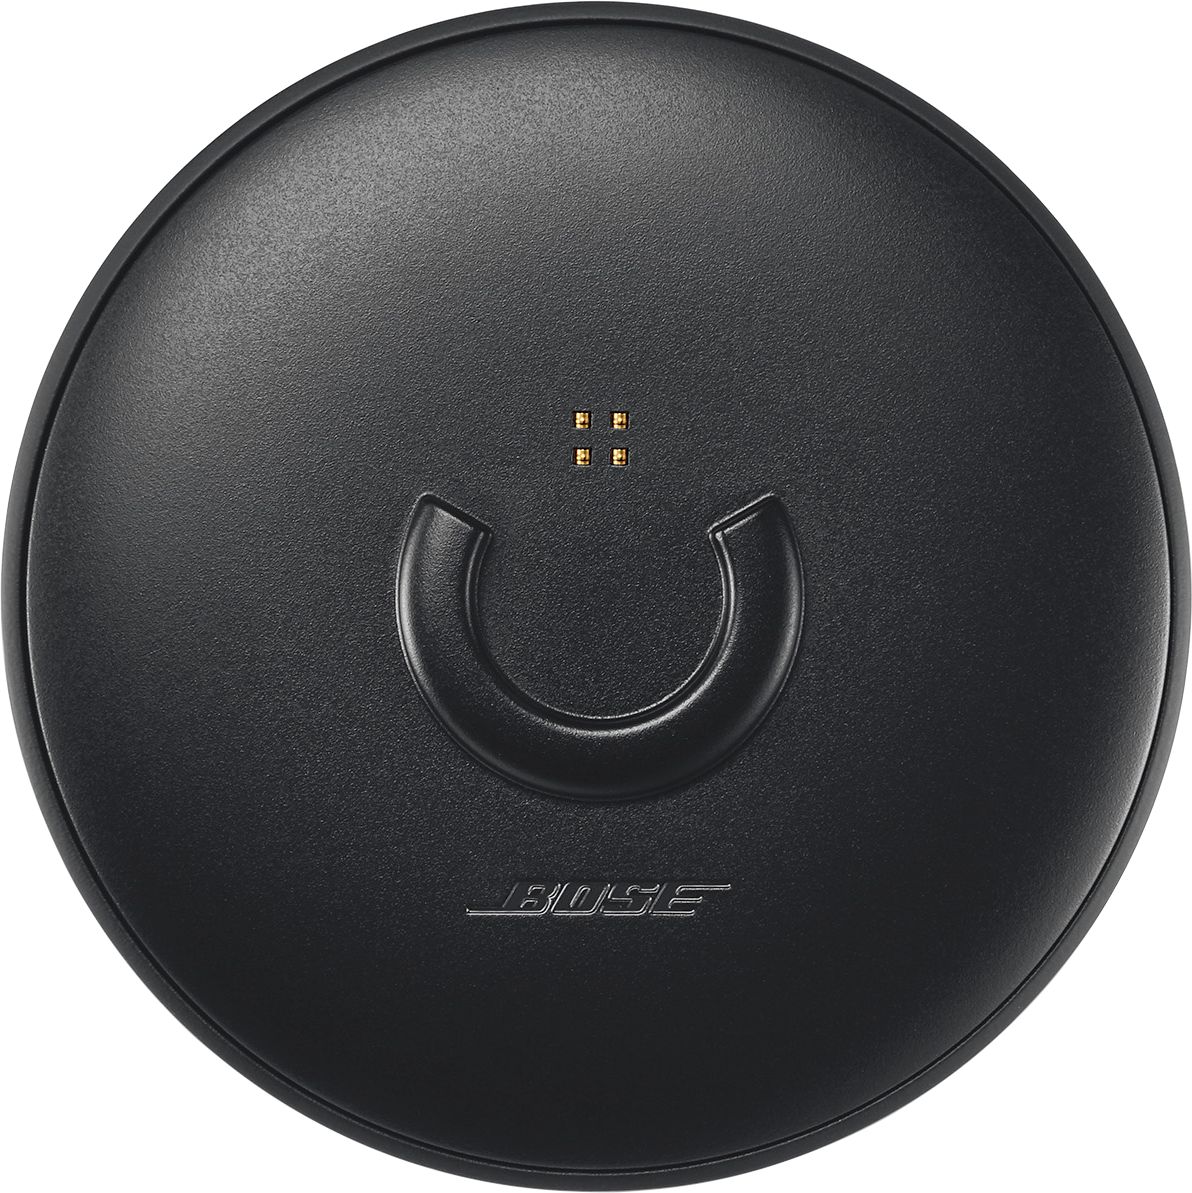 Bose SoundLink Revolve Portable Speaker Charging Dock Black 782298-0010 Best Buy